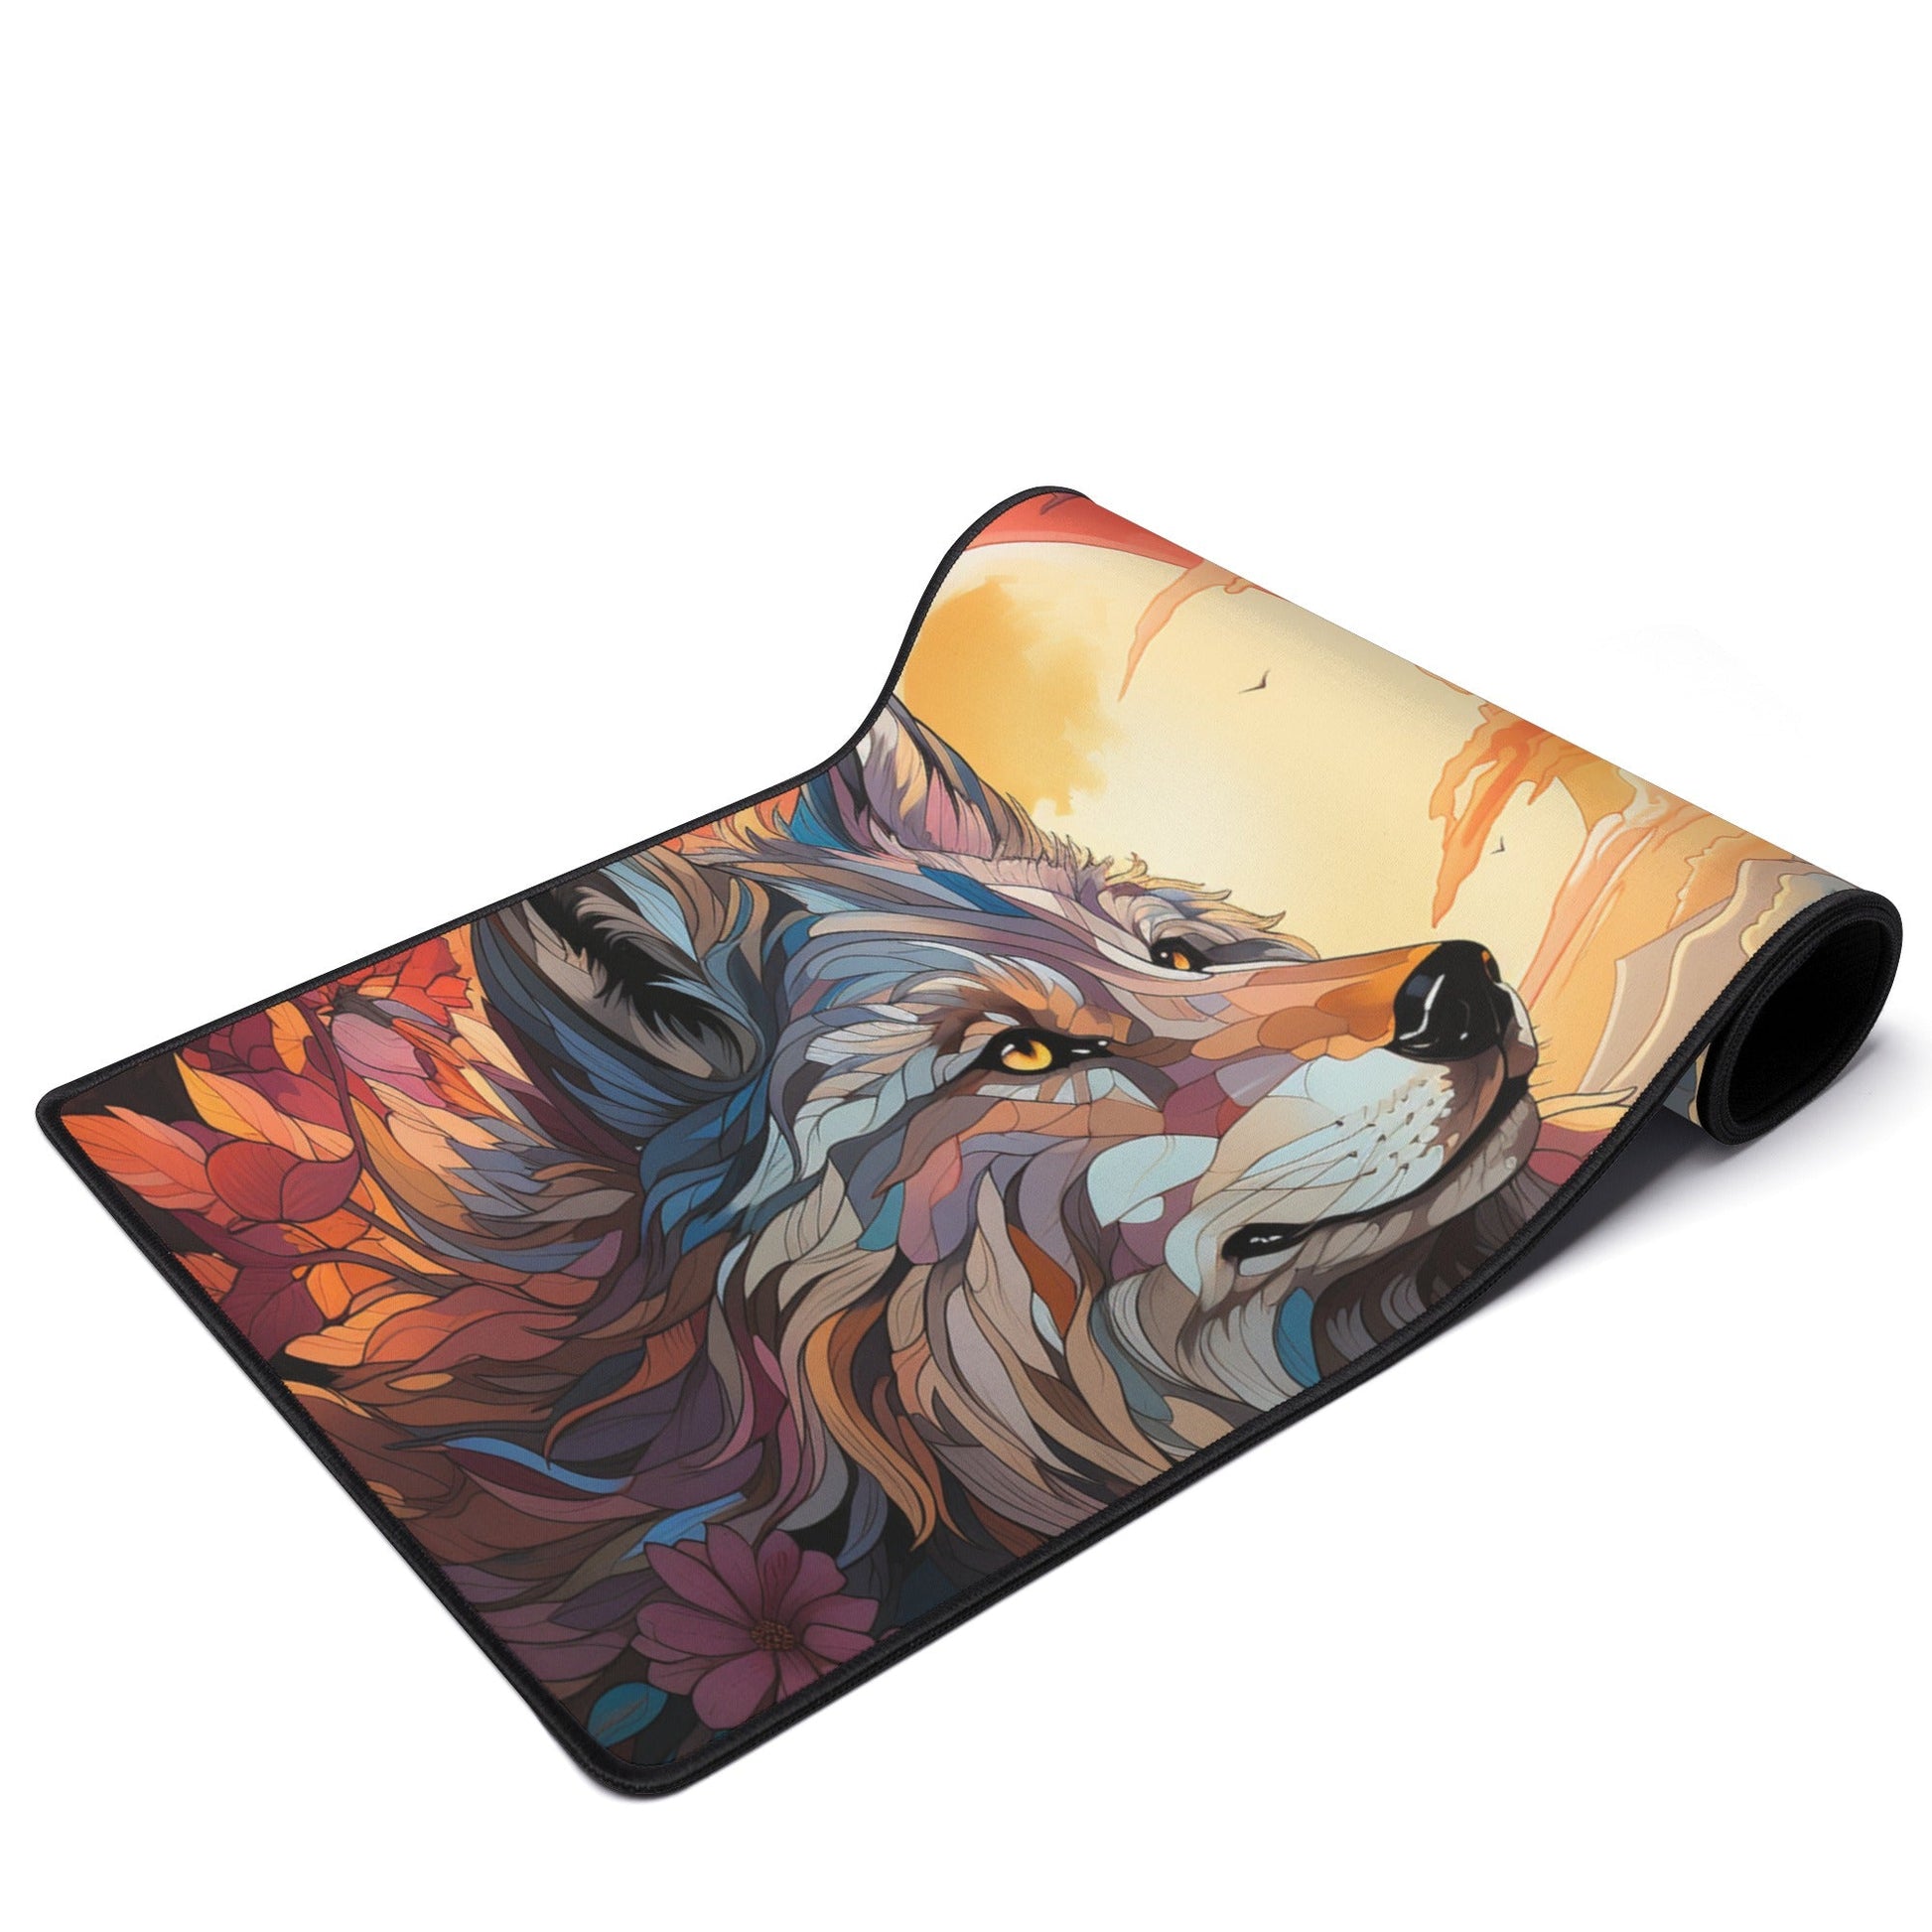 2 Sun Wolf Mouse Mat by Neduz Designs